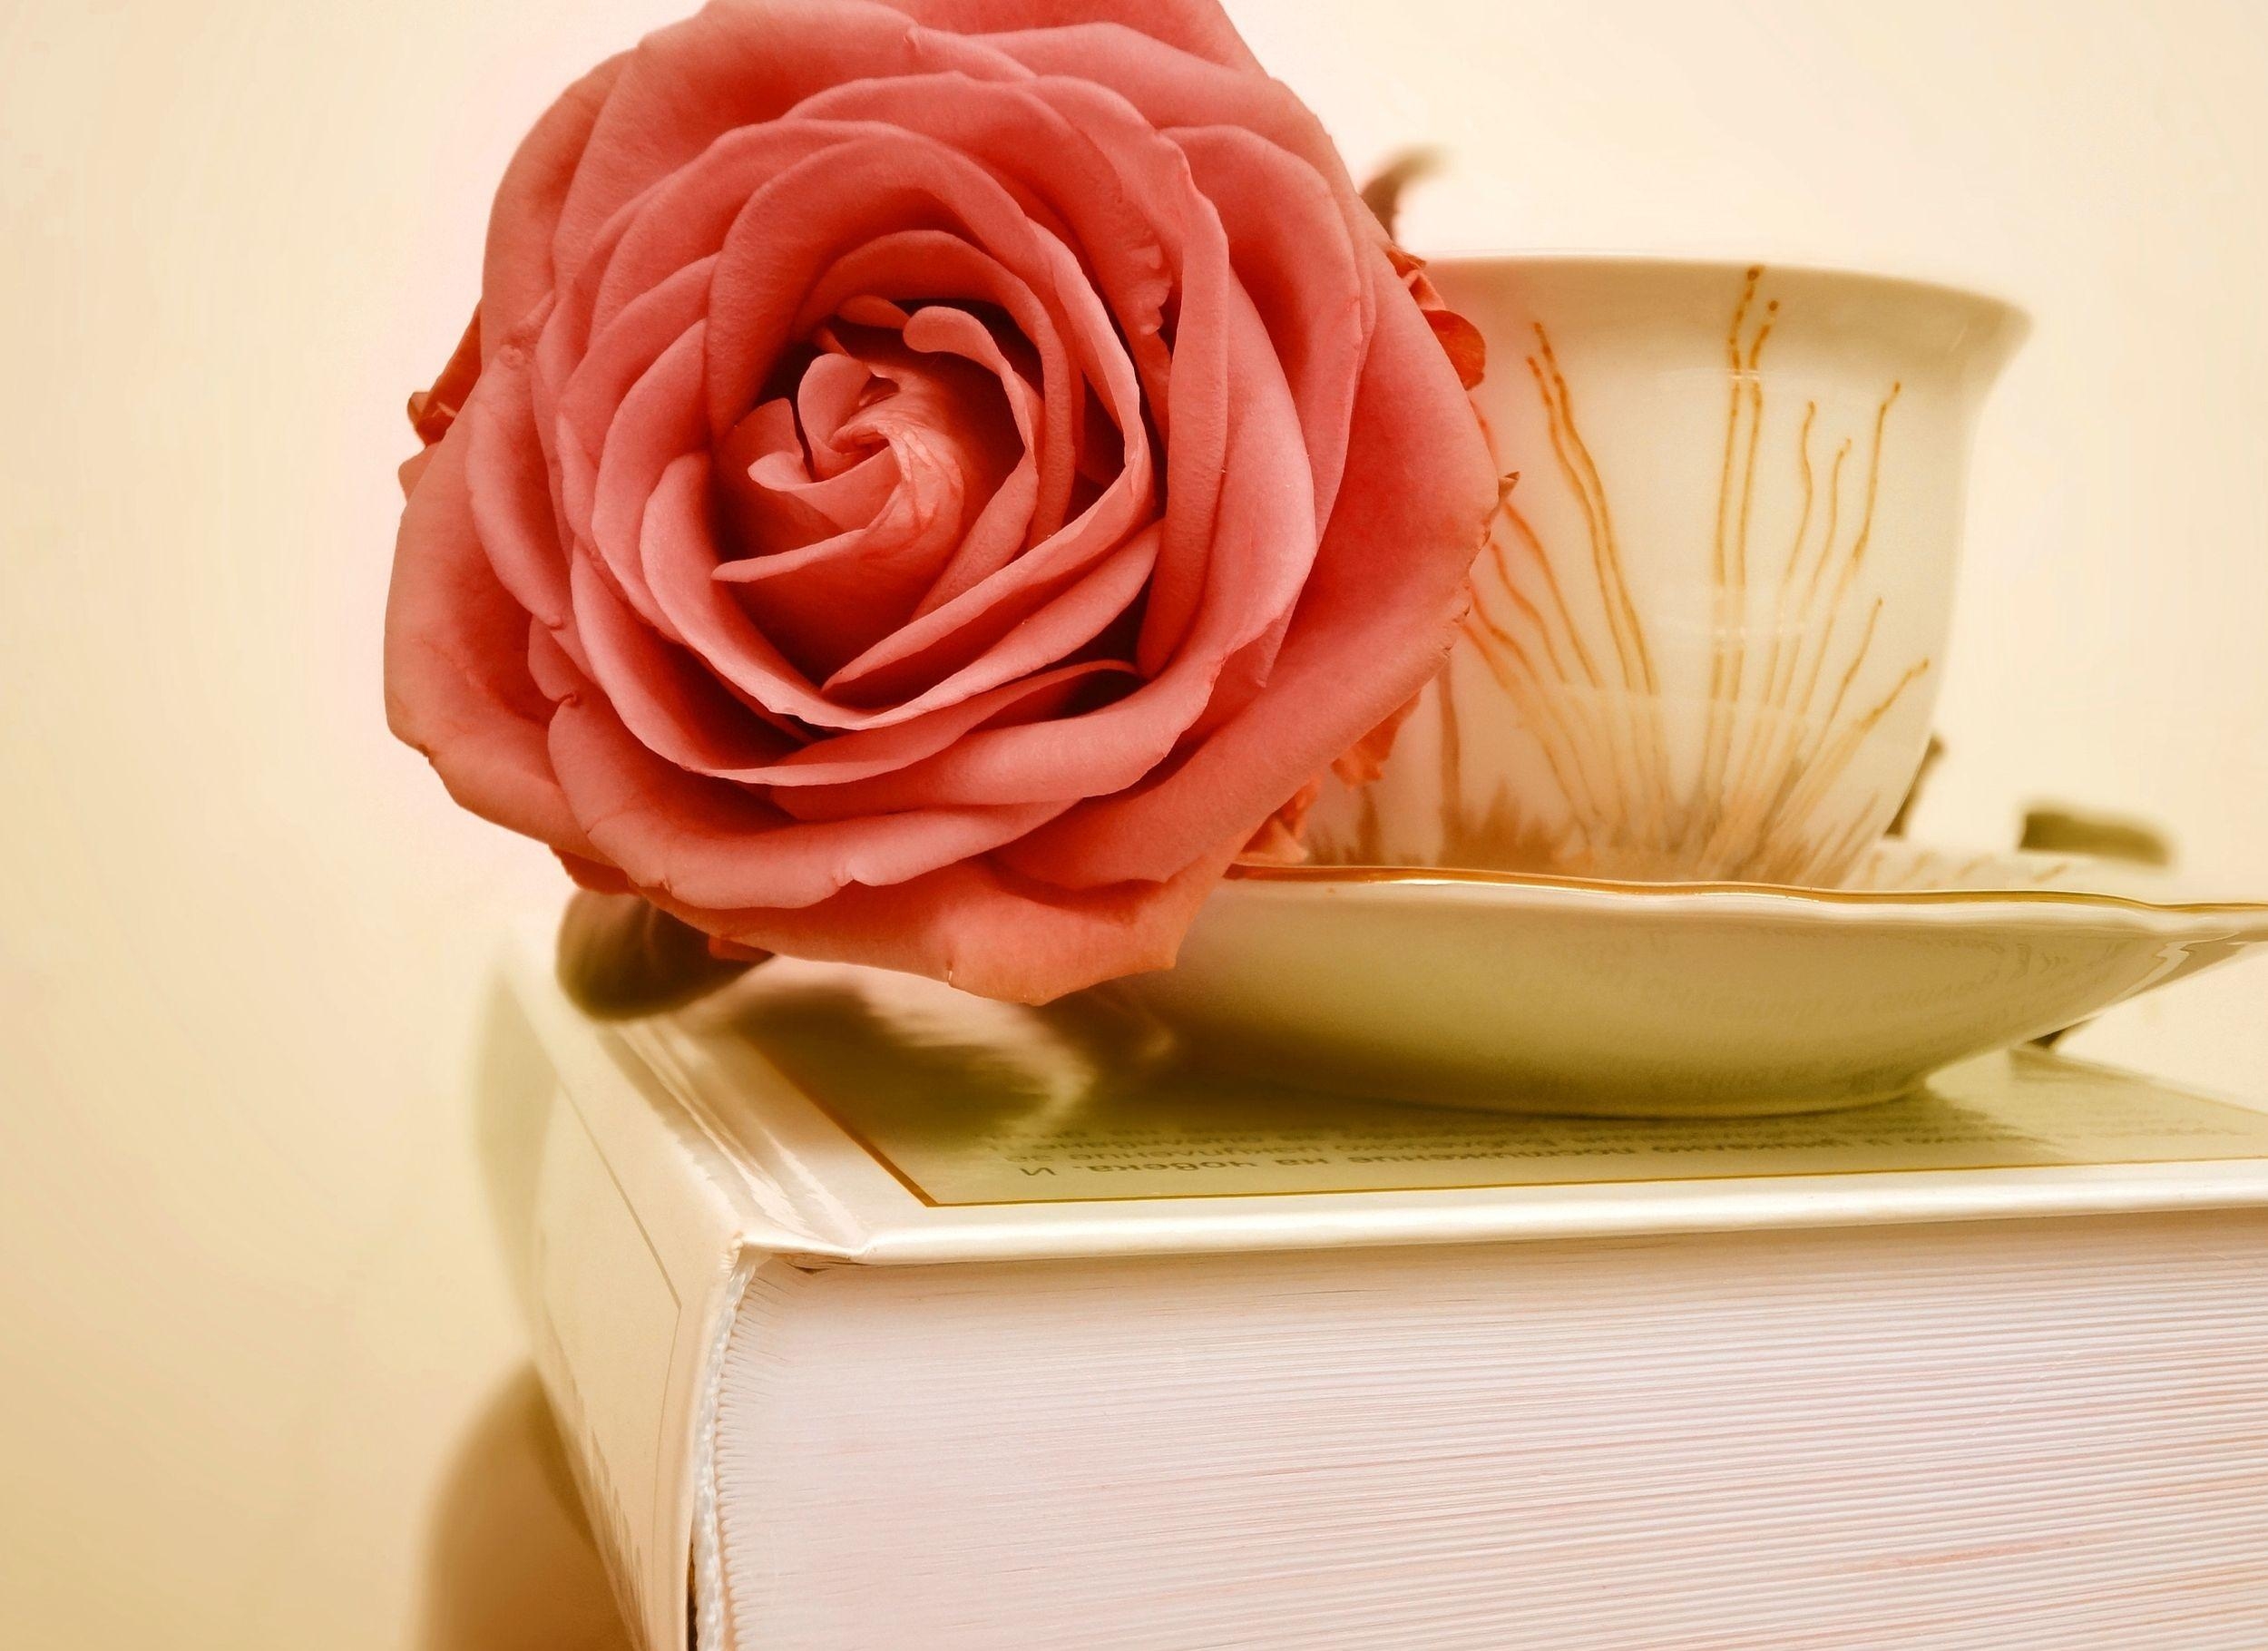 flowers, flower, rose flower, rose, bud, cup, book Image for desktop